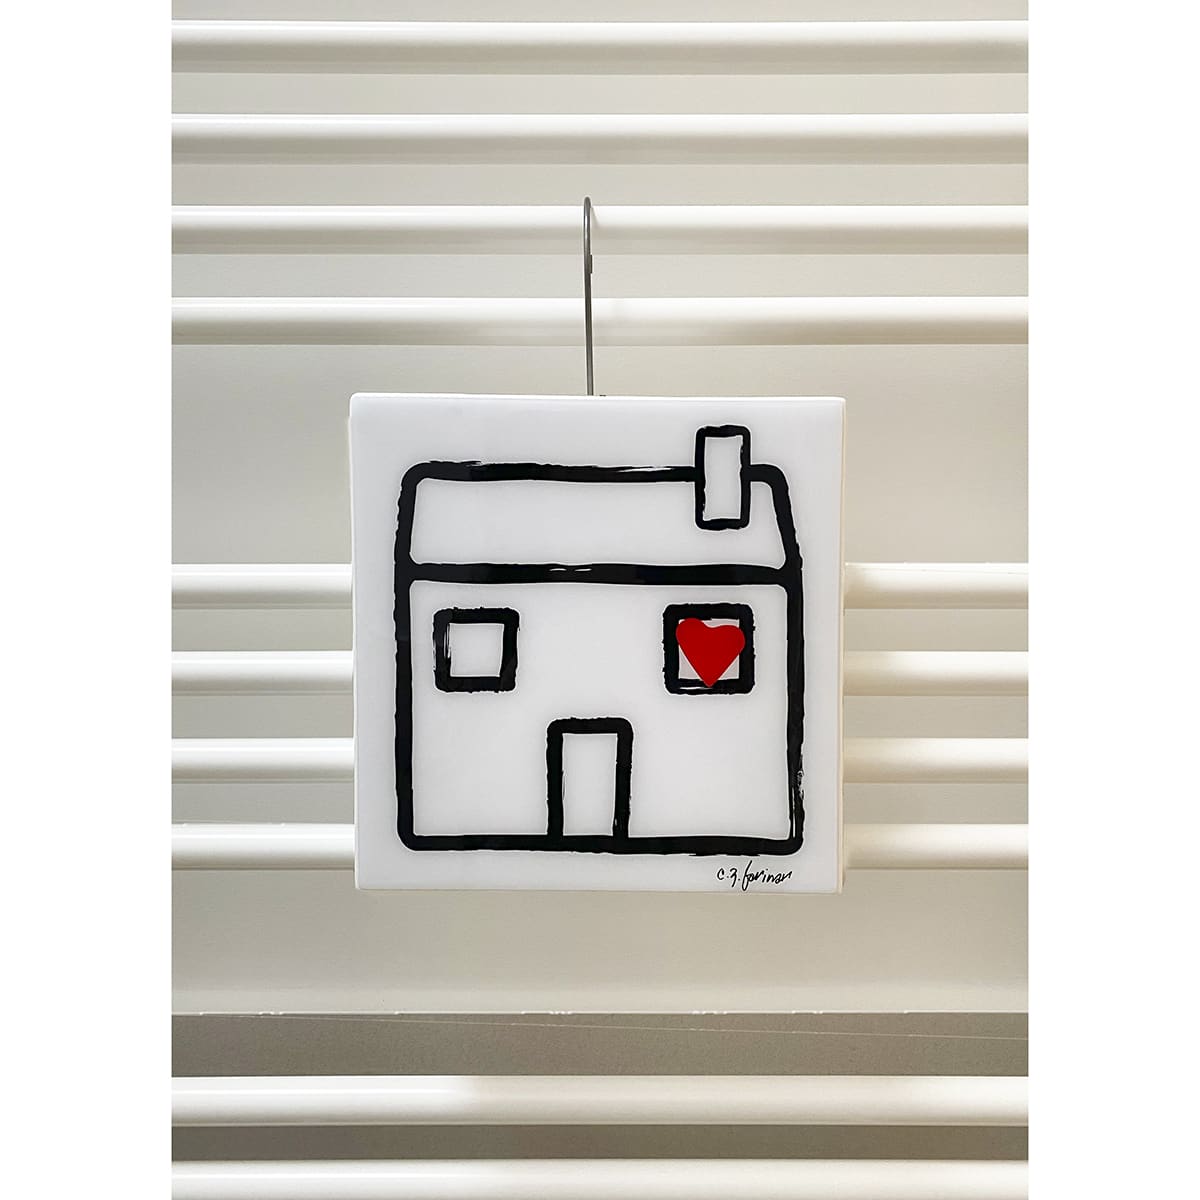 un umidificatore quadrato con il disegno in nero di una casa stilizzata dalla cui finestra esce un cuore rosso è appeso ad uno dei tubi di un radiatore bianco